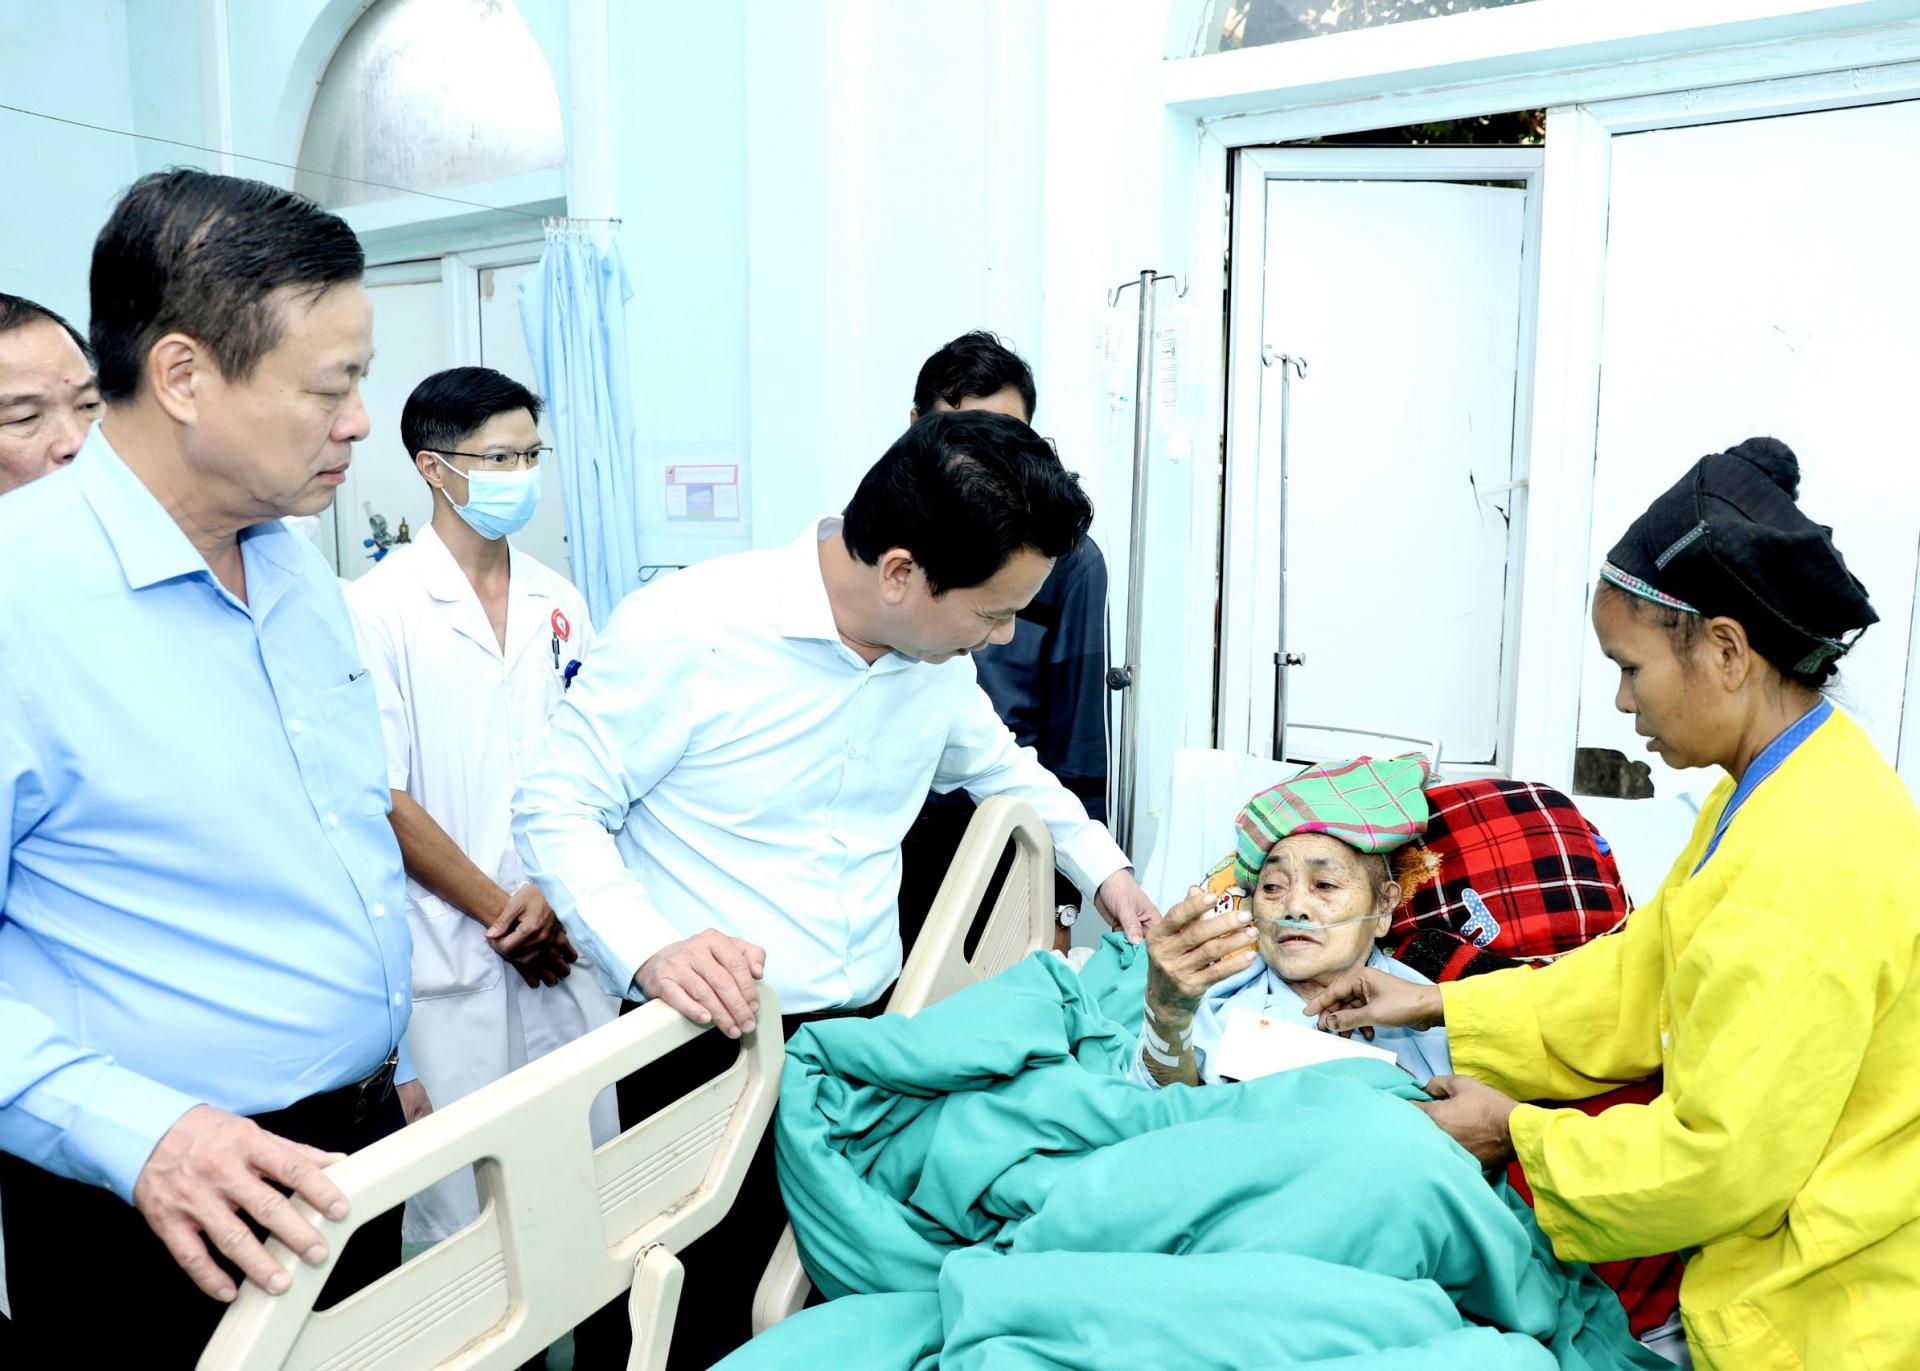 Bộ trưởng Đặng Quốc Khánh và Chủ tịch UBND tỉnh Nguyễn Văn Sơn thăm tặng quà, động viên bệnh nhân đang điều trị tại Bệnh viện Đa khoa Xín Mần